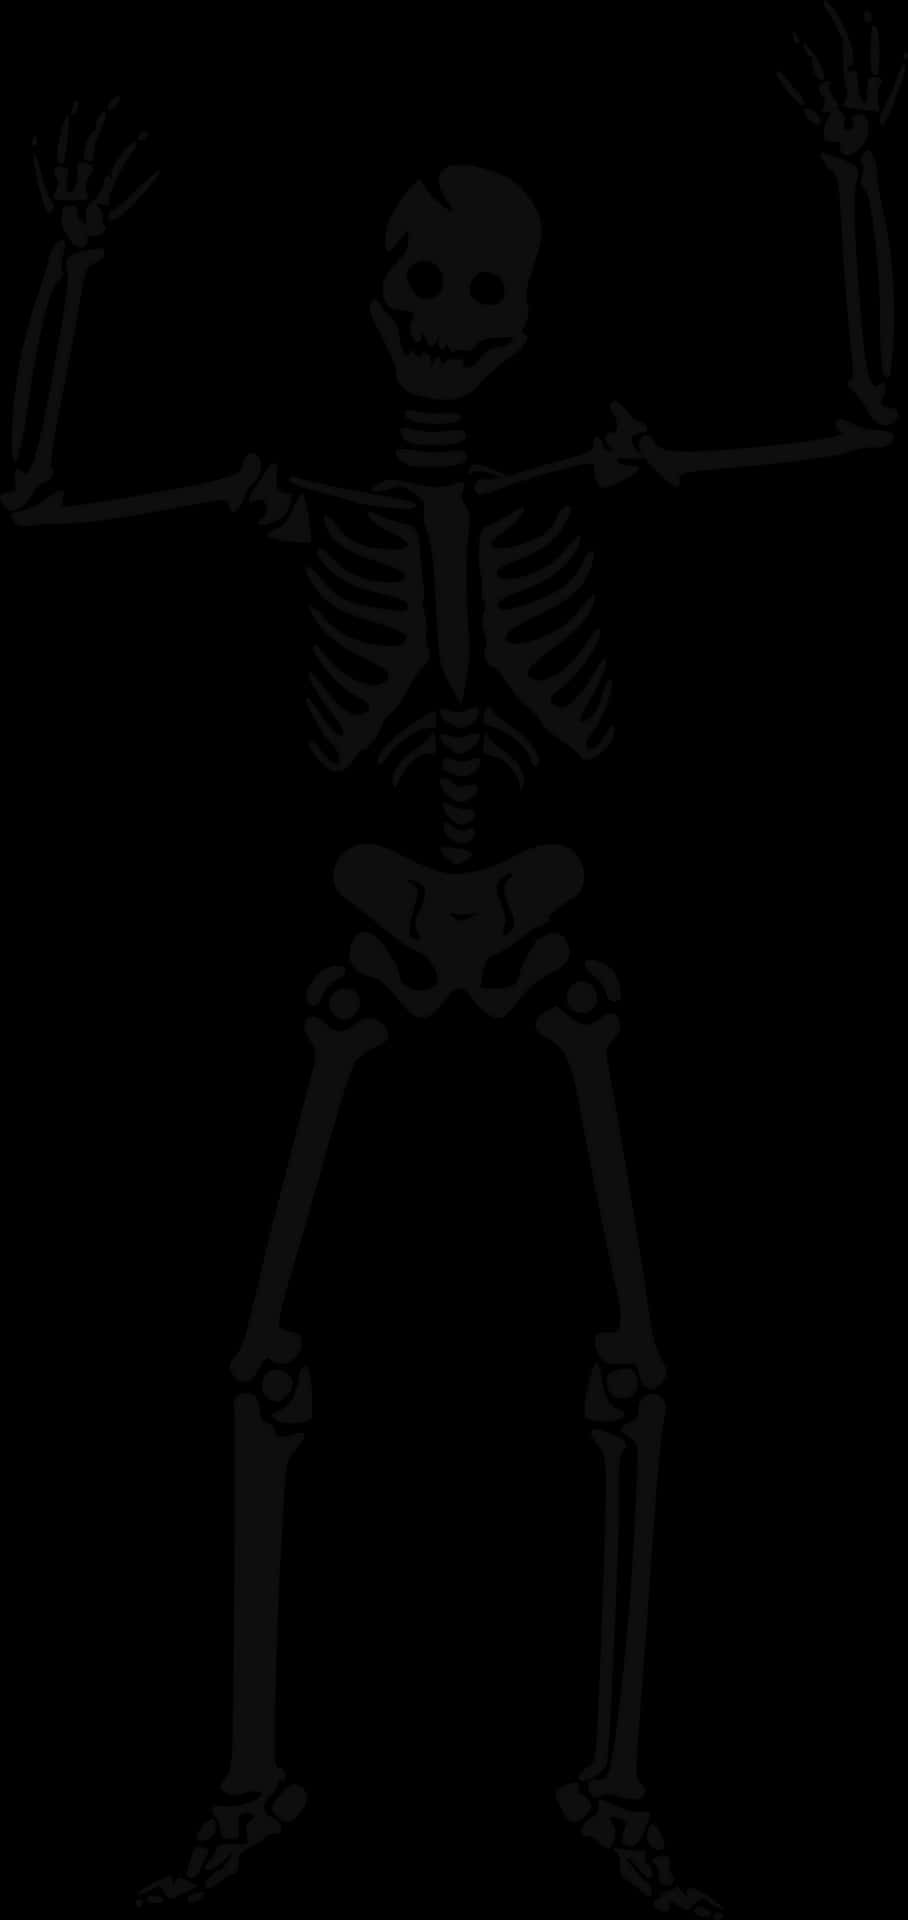 Human Skeleton Illustration PNG